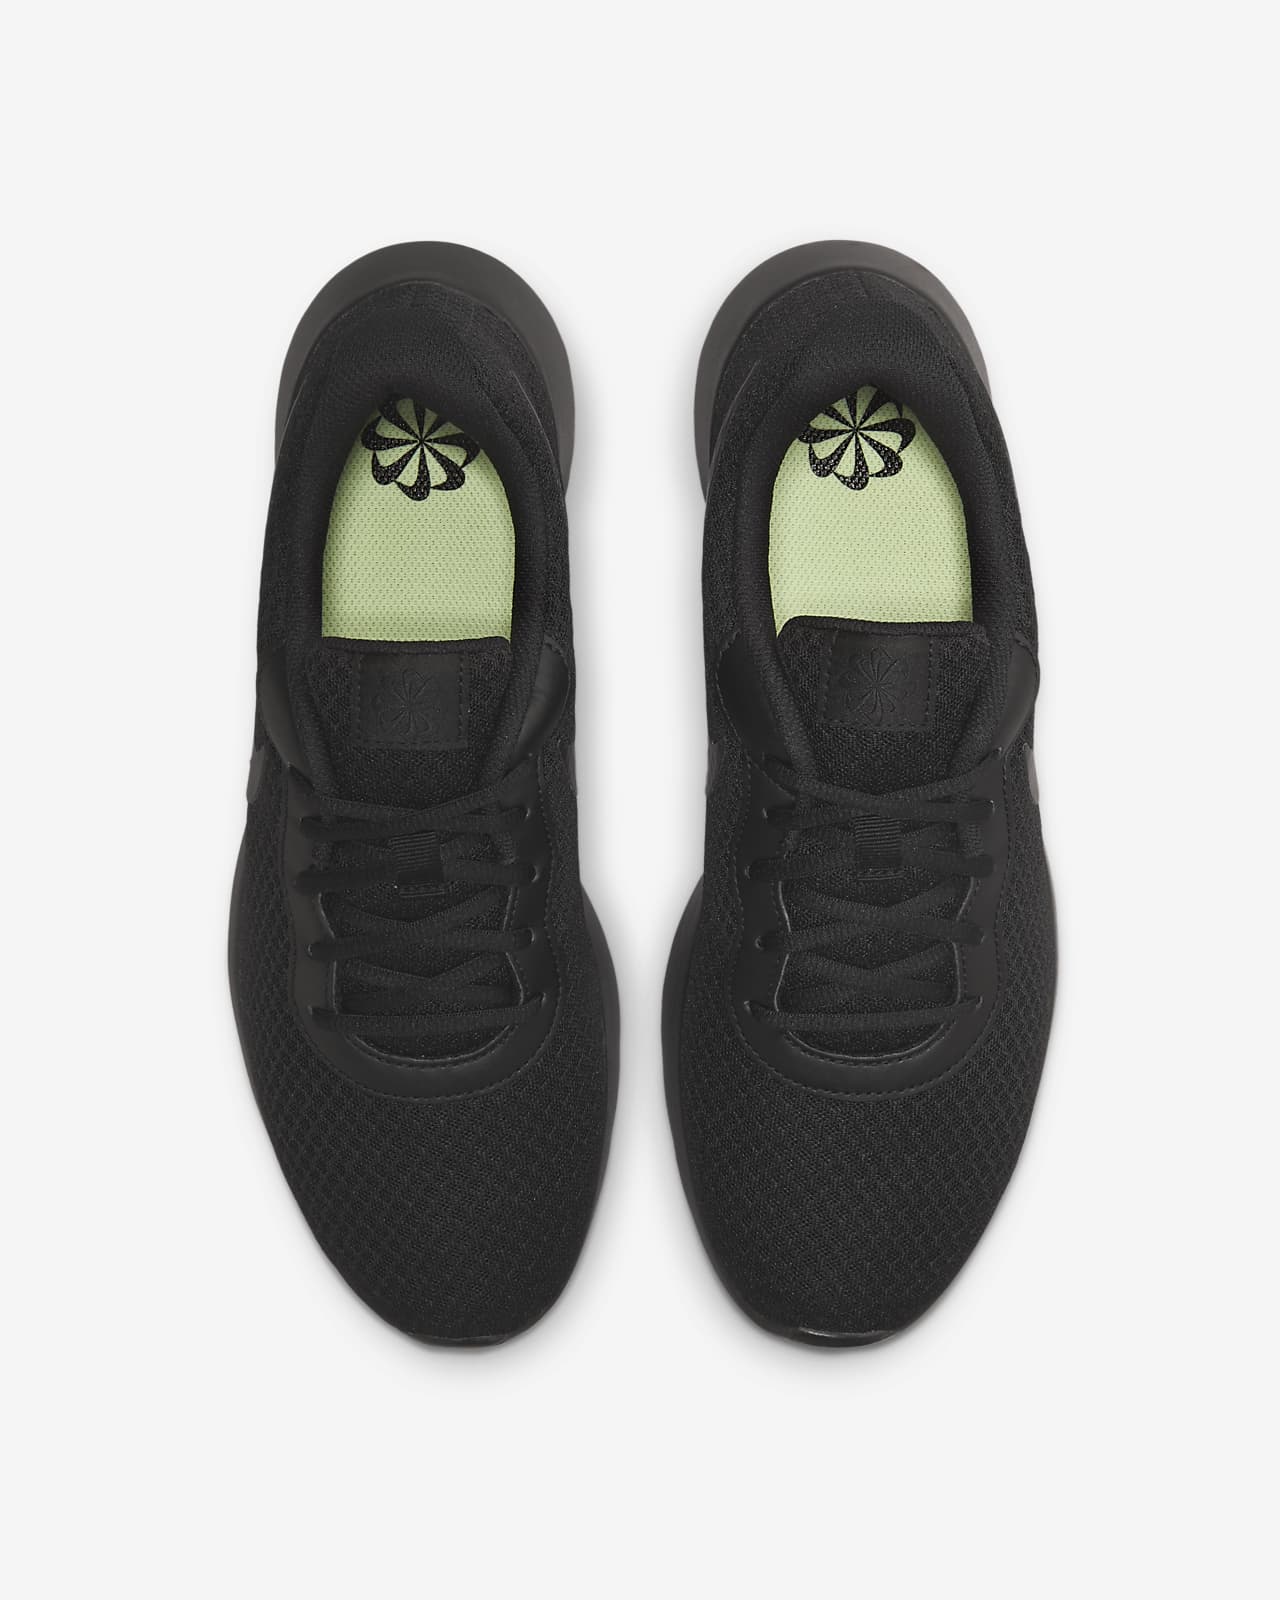 Nike Tanjun Men's Shoes.